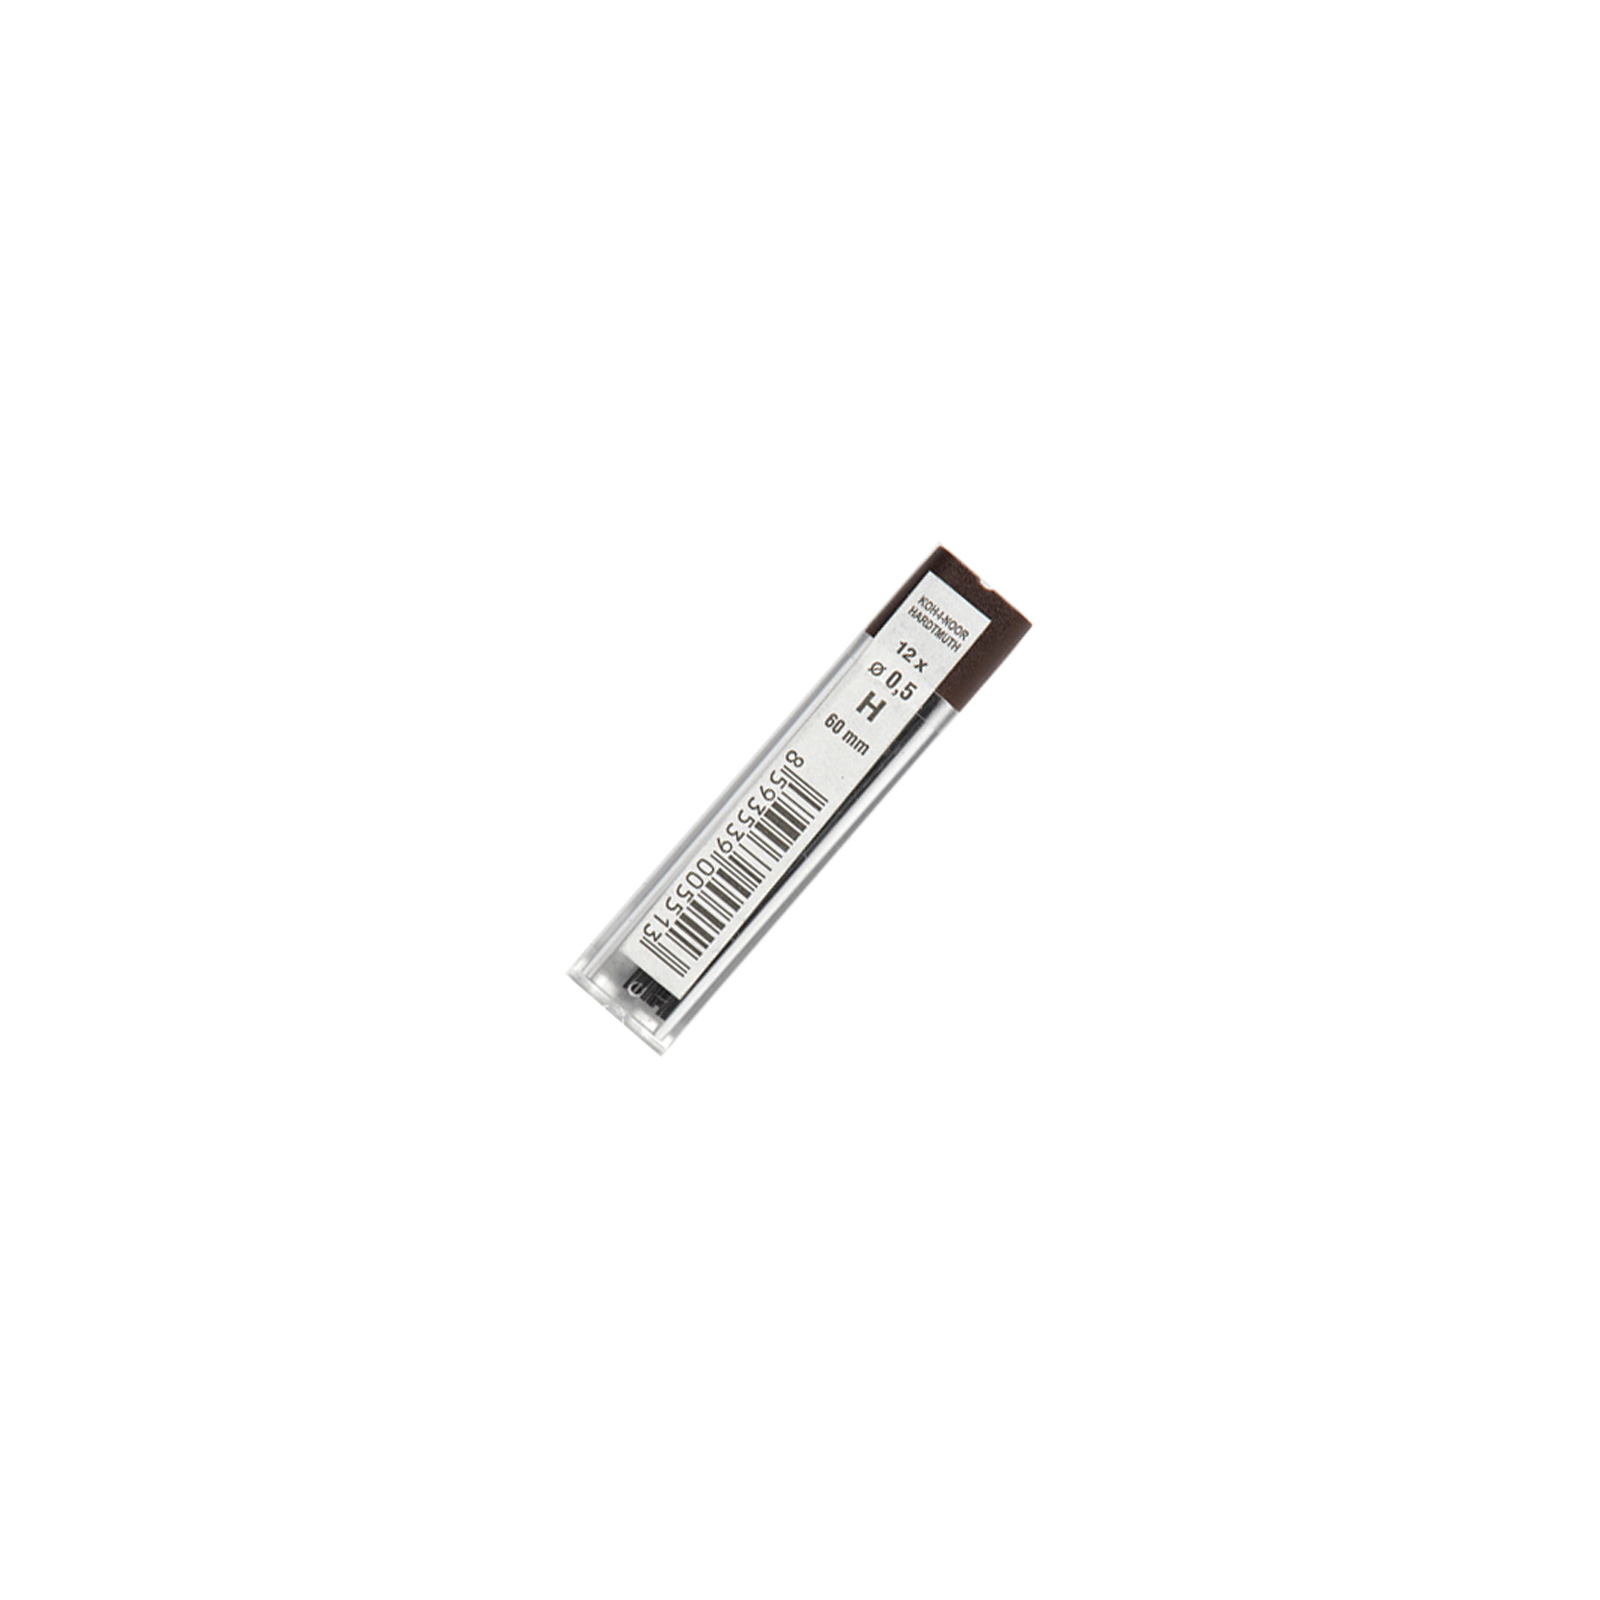 Грифель для механічного олівця Koh-i-Noor 4152.H, 0.5 мм, 12шт (415200H005PK)